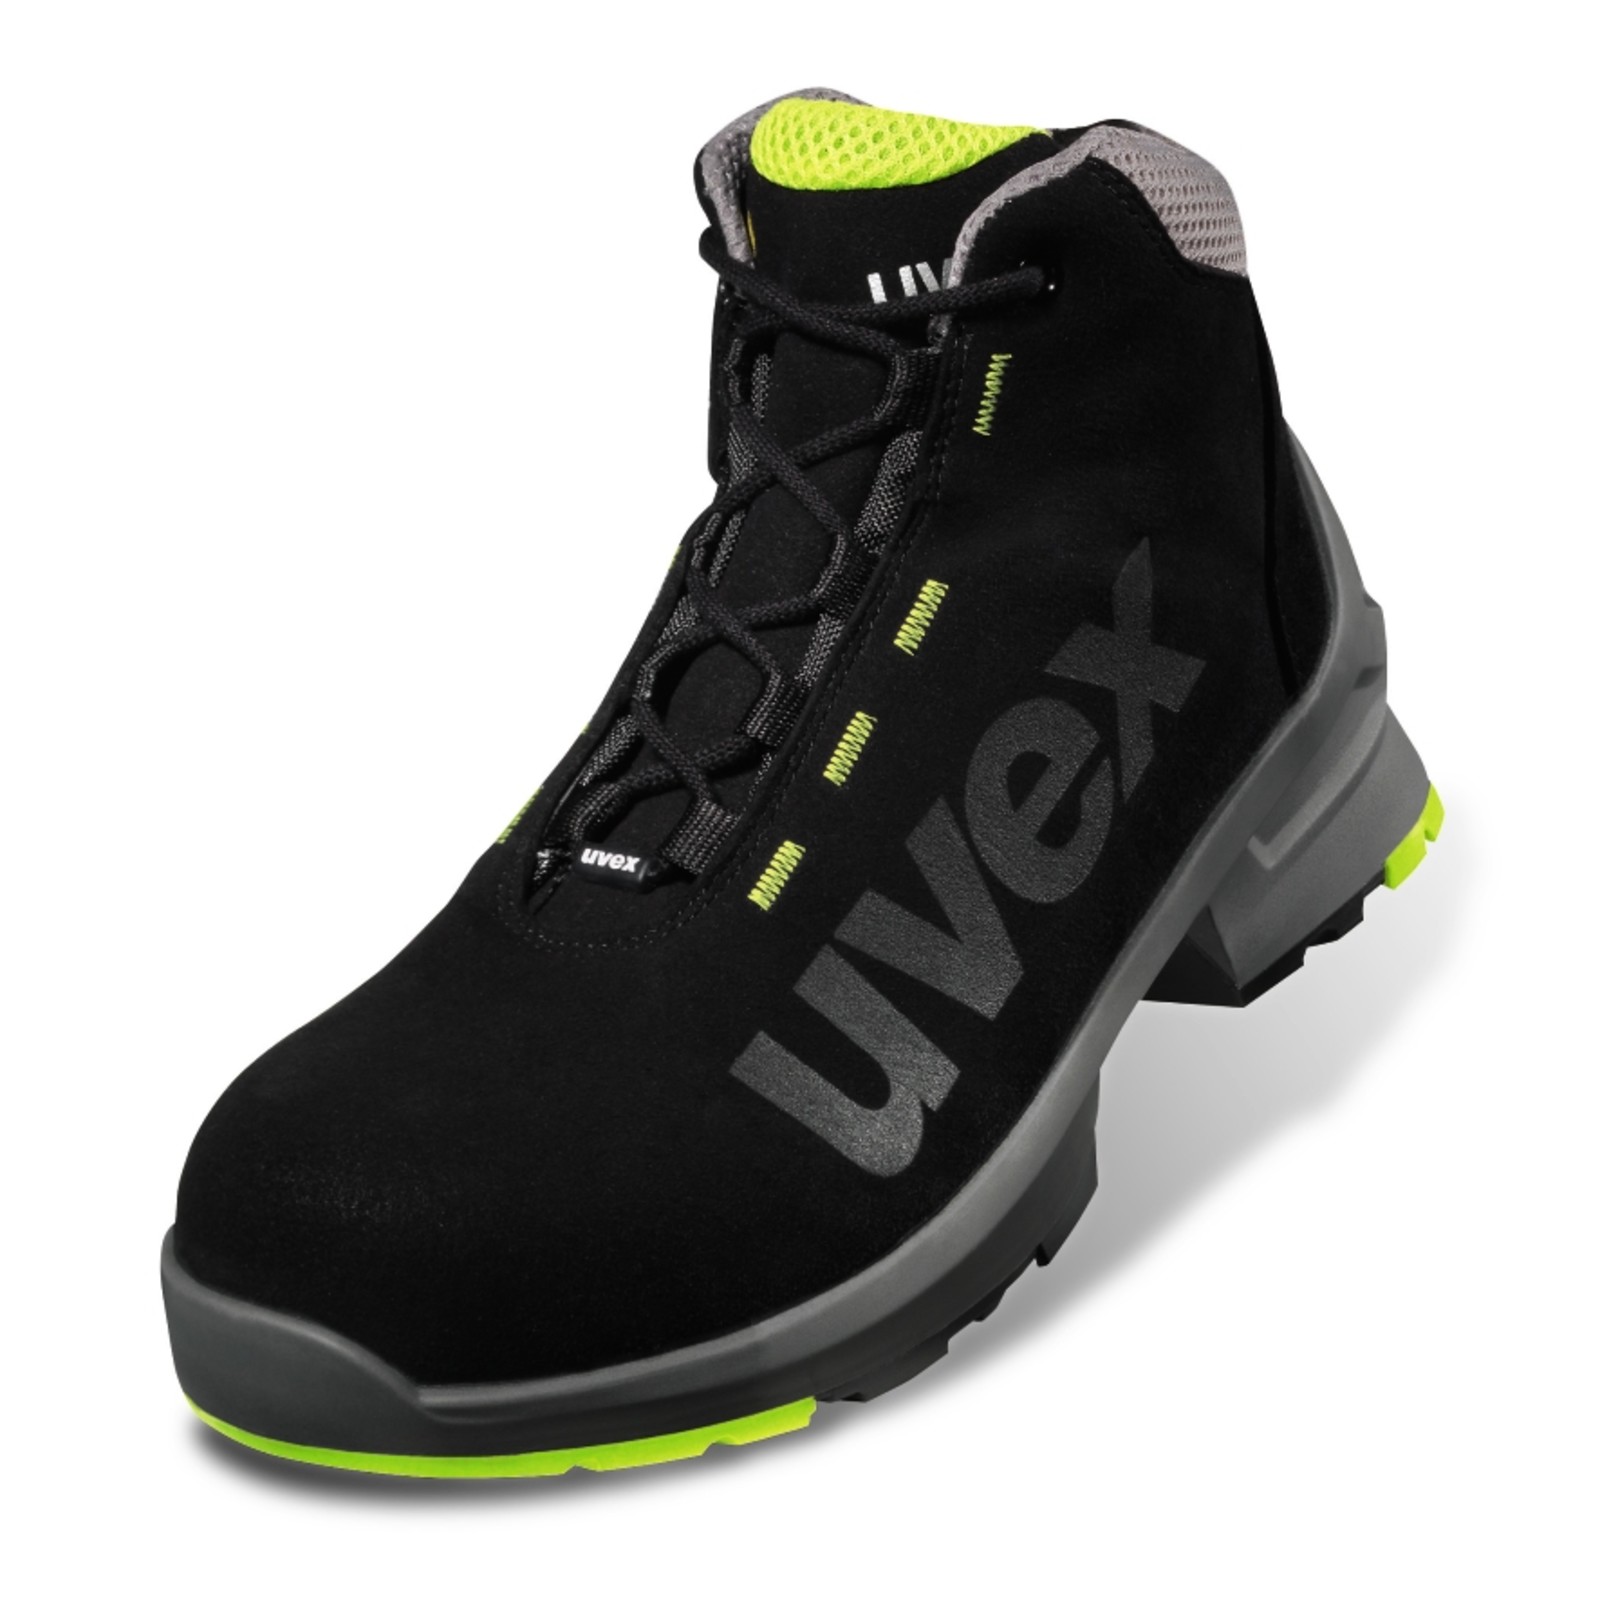 Pracovná obuv Uvex 1 S2 - veľkosť: 51, farba: čierna